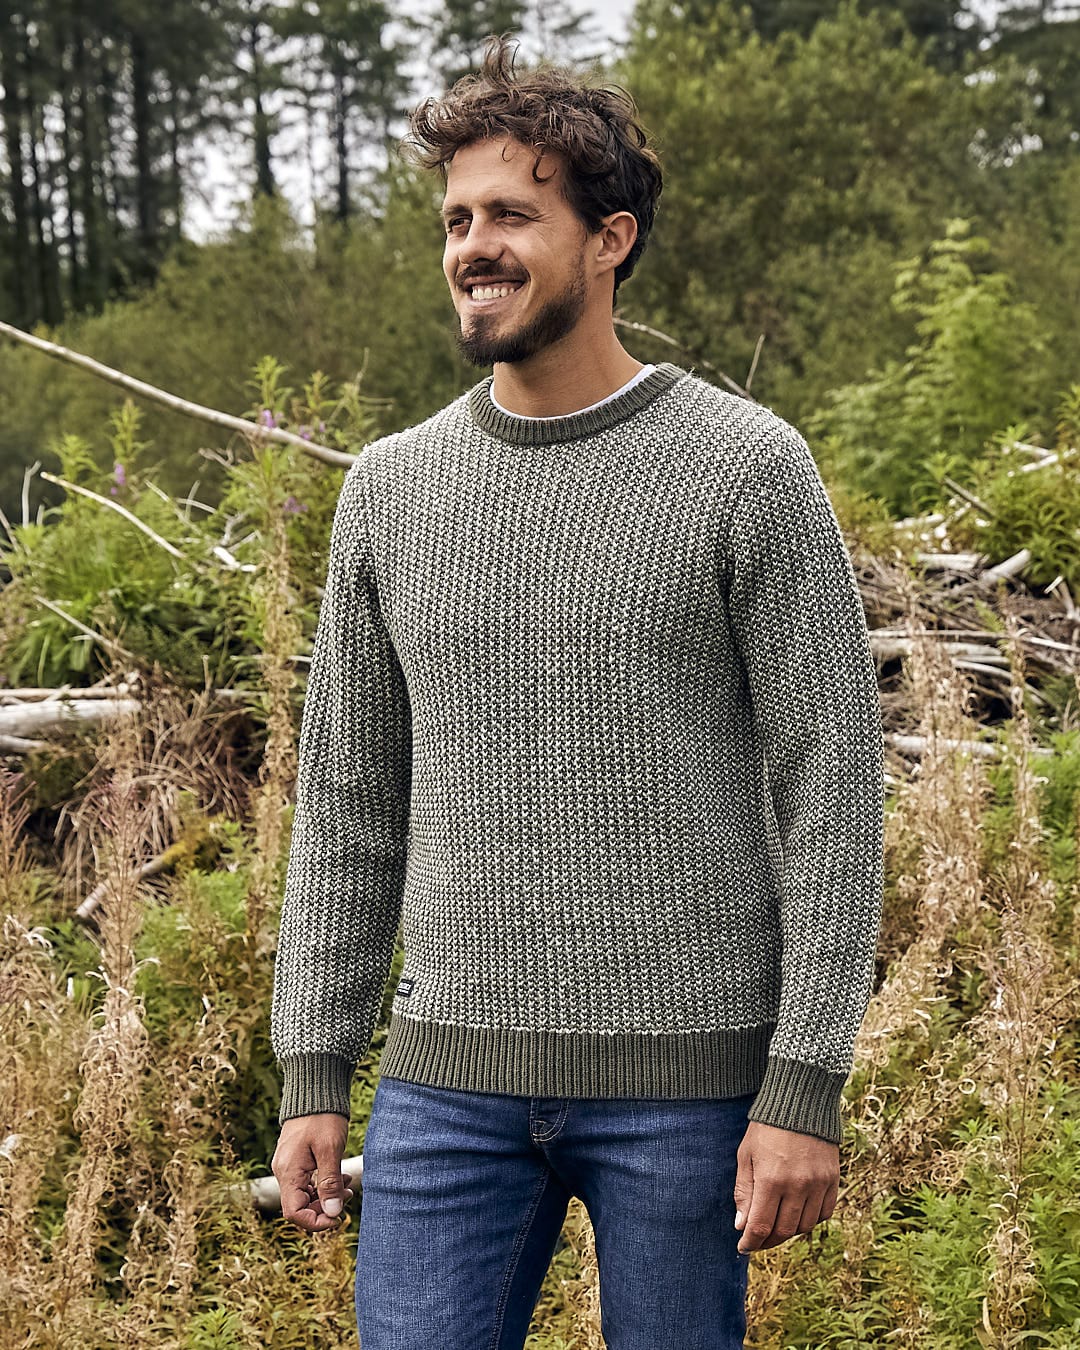 A man is standing in a field wearing the Saltrock Arlen - Mens Crew Knit - Dark Green sweater.